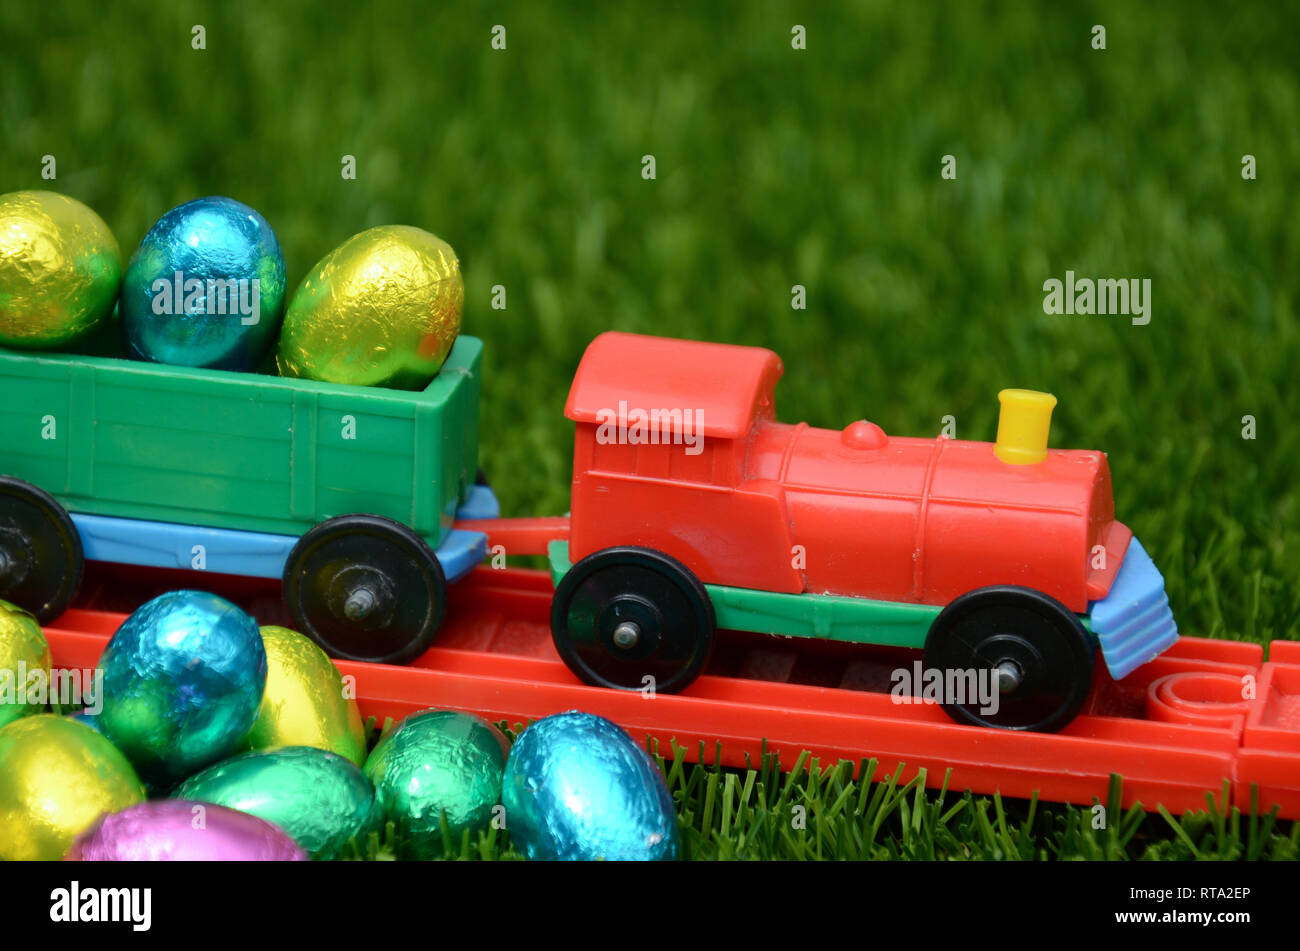 Colorato giocattolo di plastica trasporti treno luminose colorate uova di pasqua sul binario ferroviario sull'erba. Concetto di infanzia, play, i viaggi e le vacanze di pasqua. Foto Stock